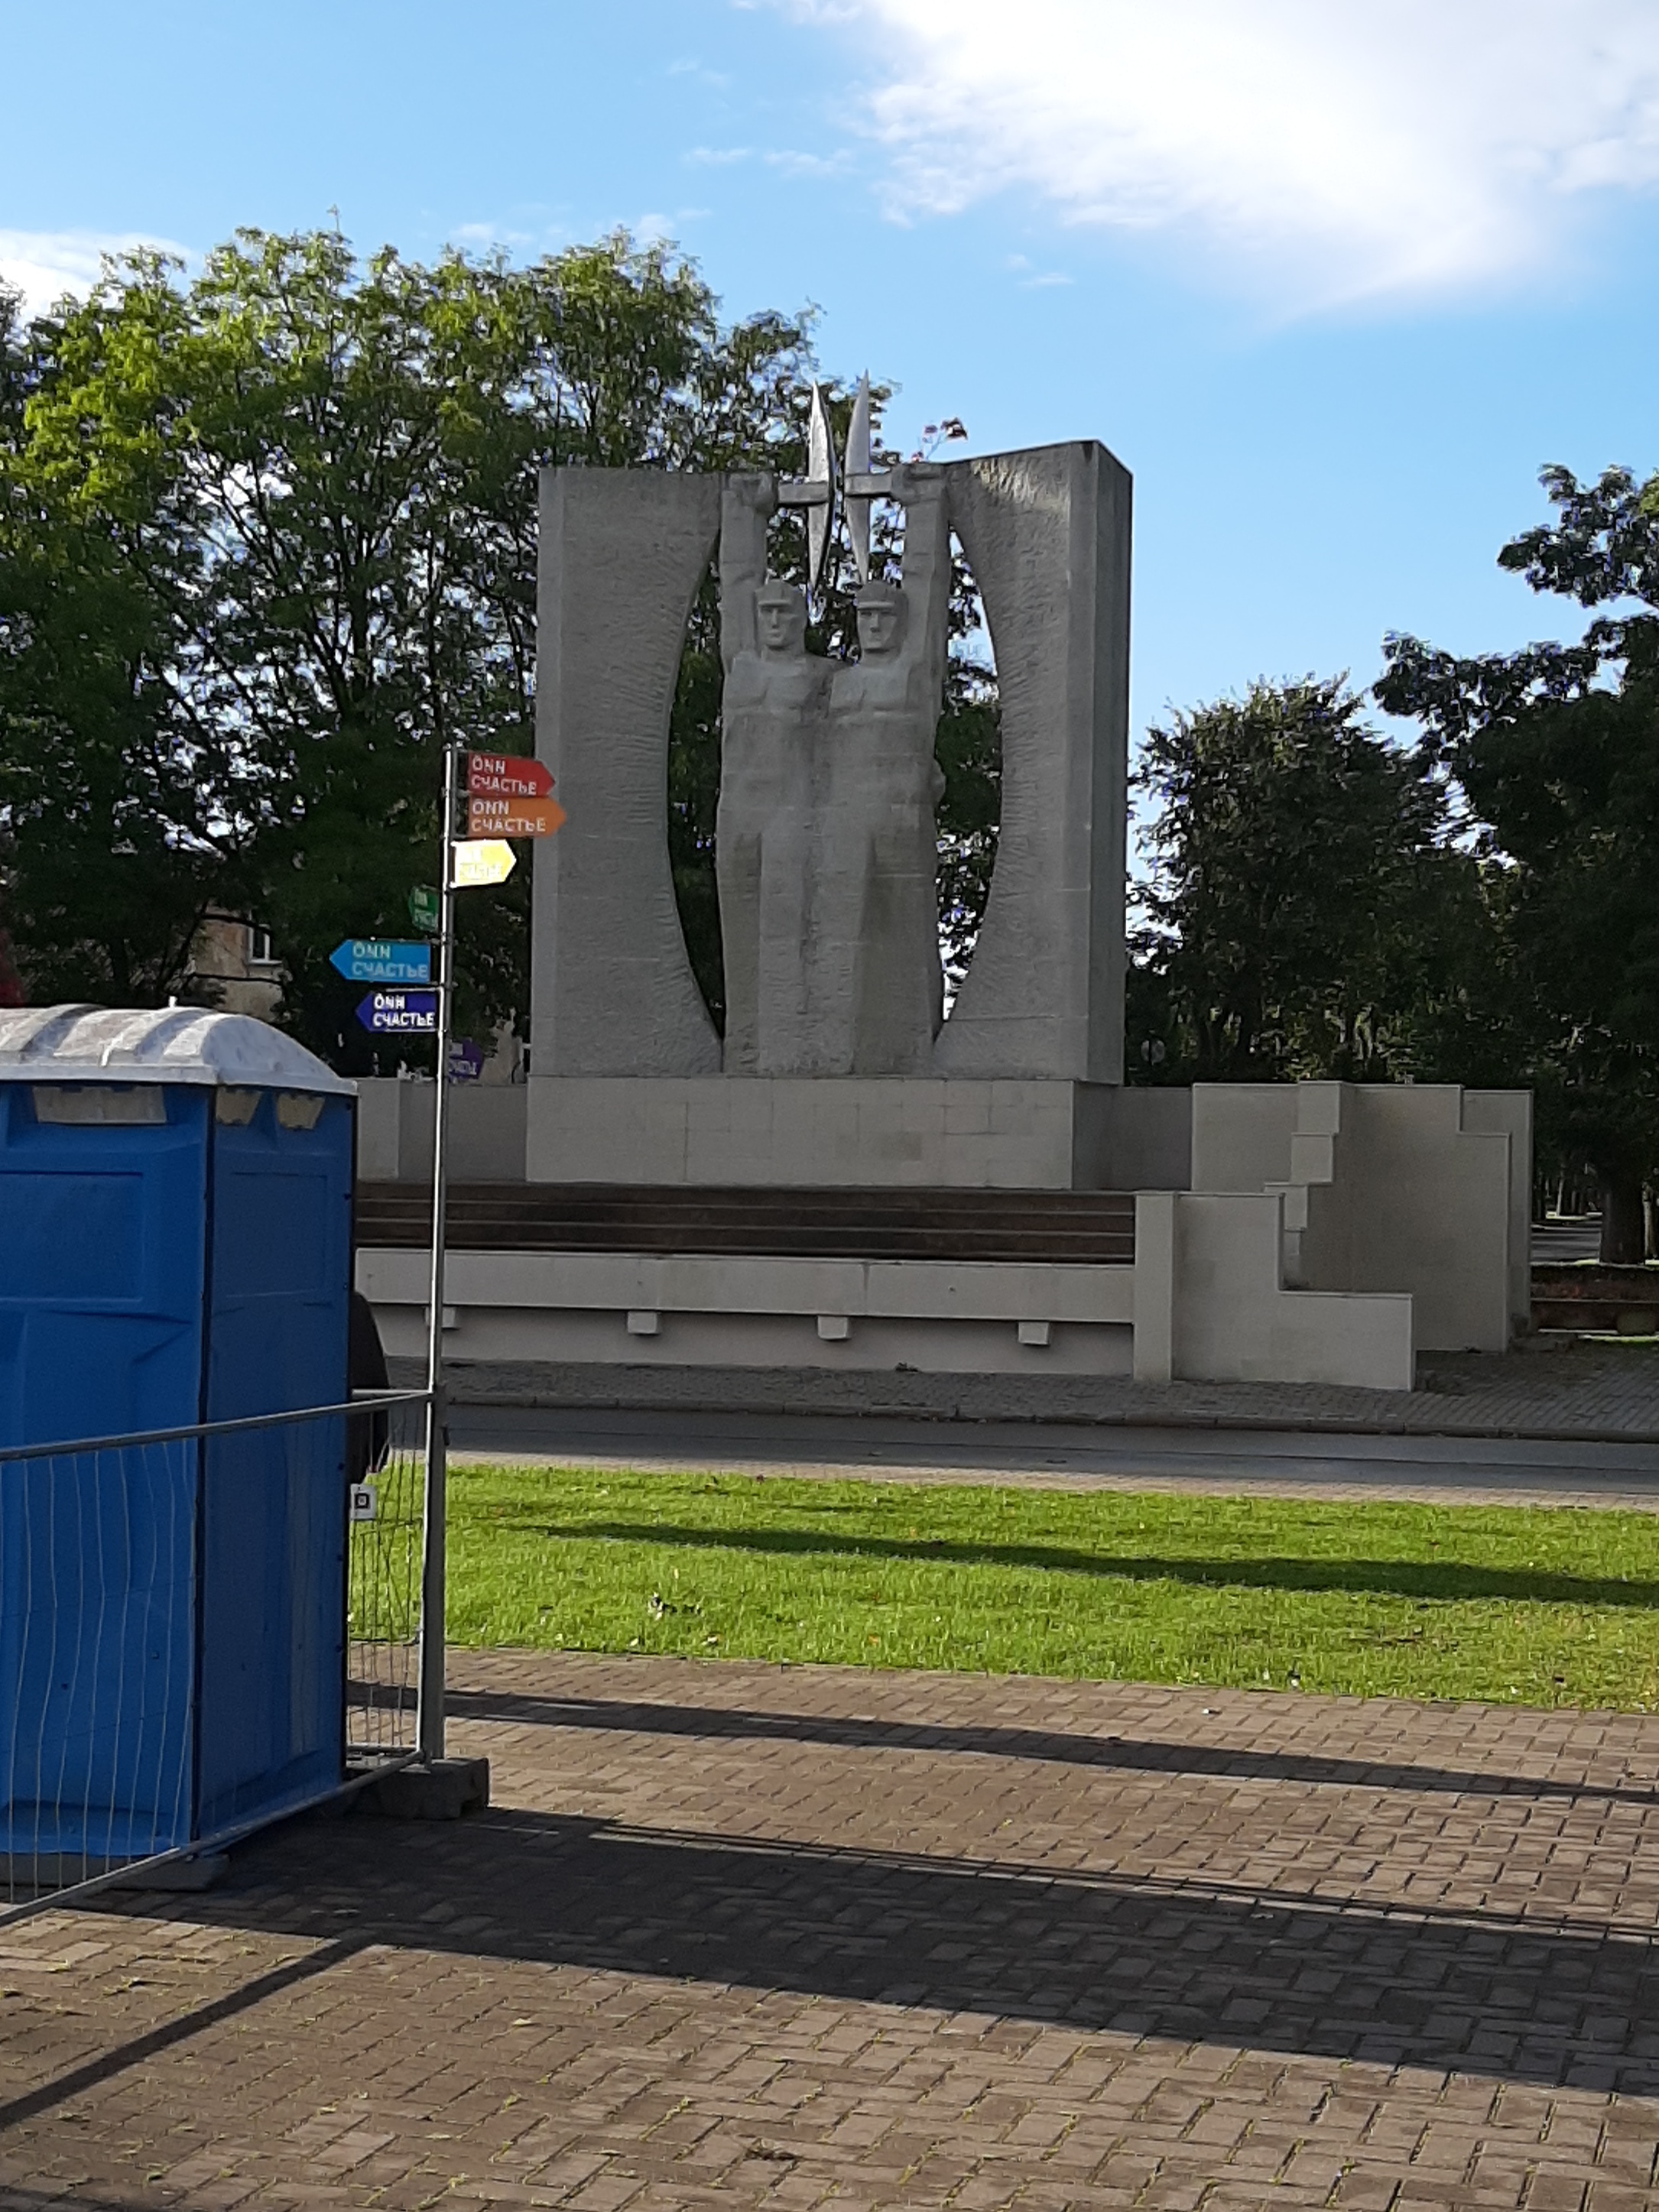 Kohtla Järve. Monument to work. rephoto